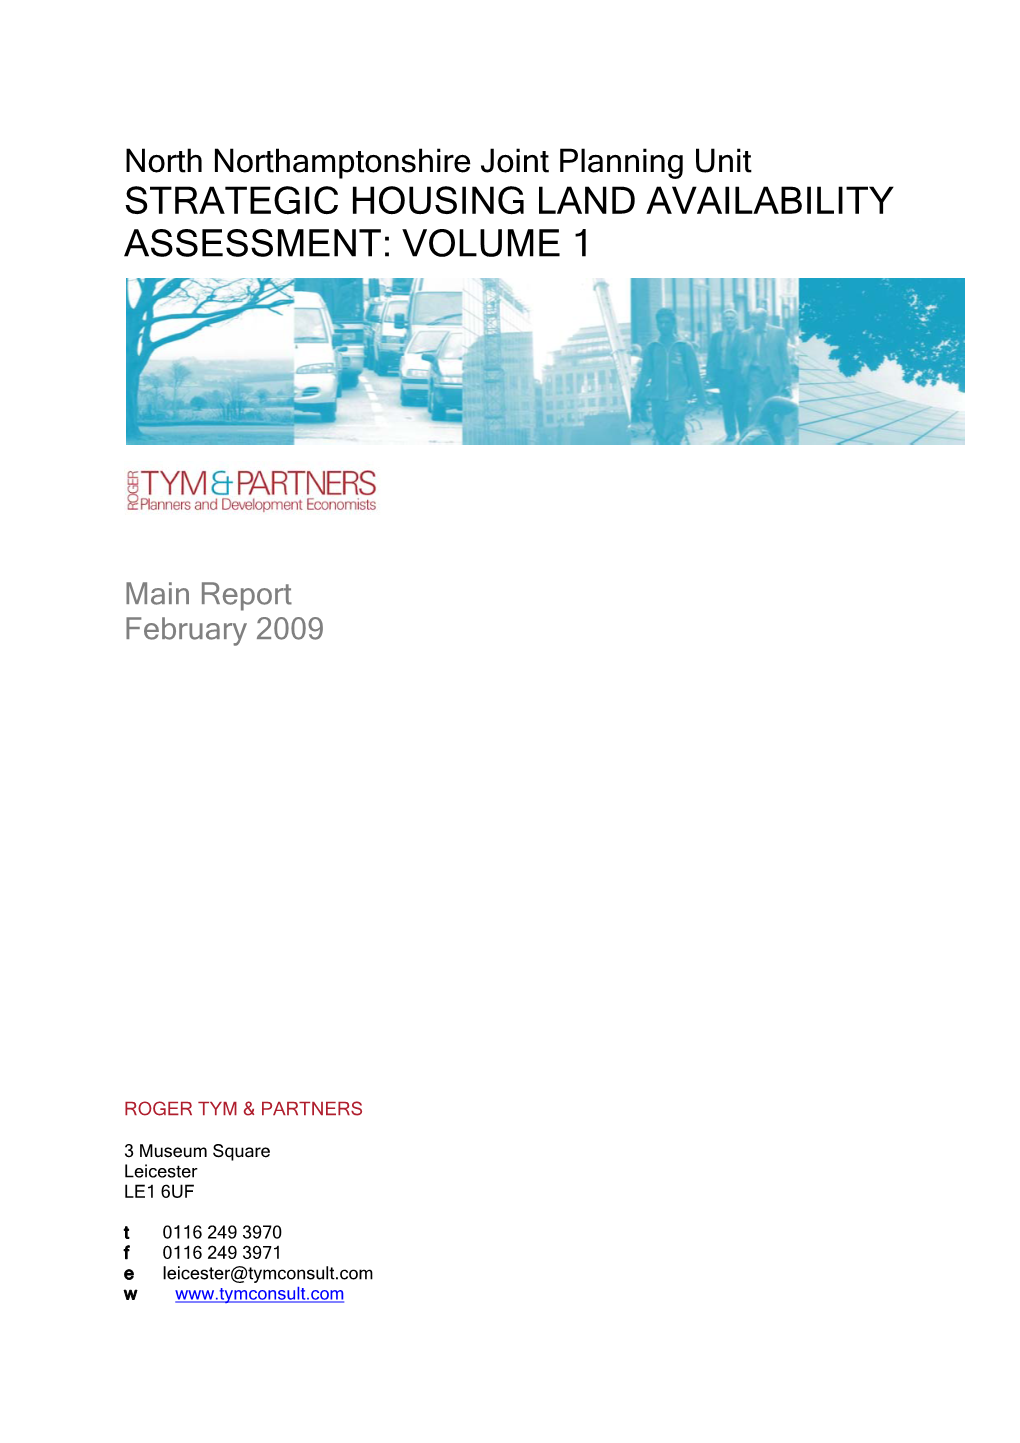 Strategic Housing Land Availability Assessment: Volume 1